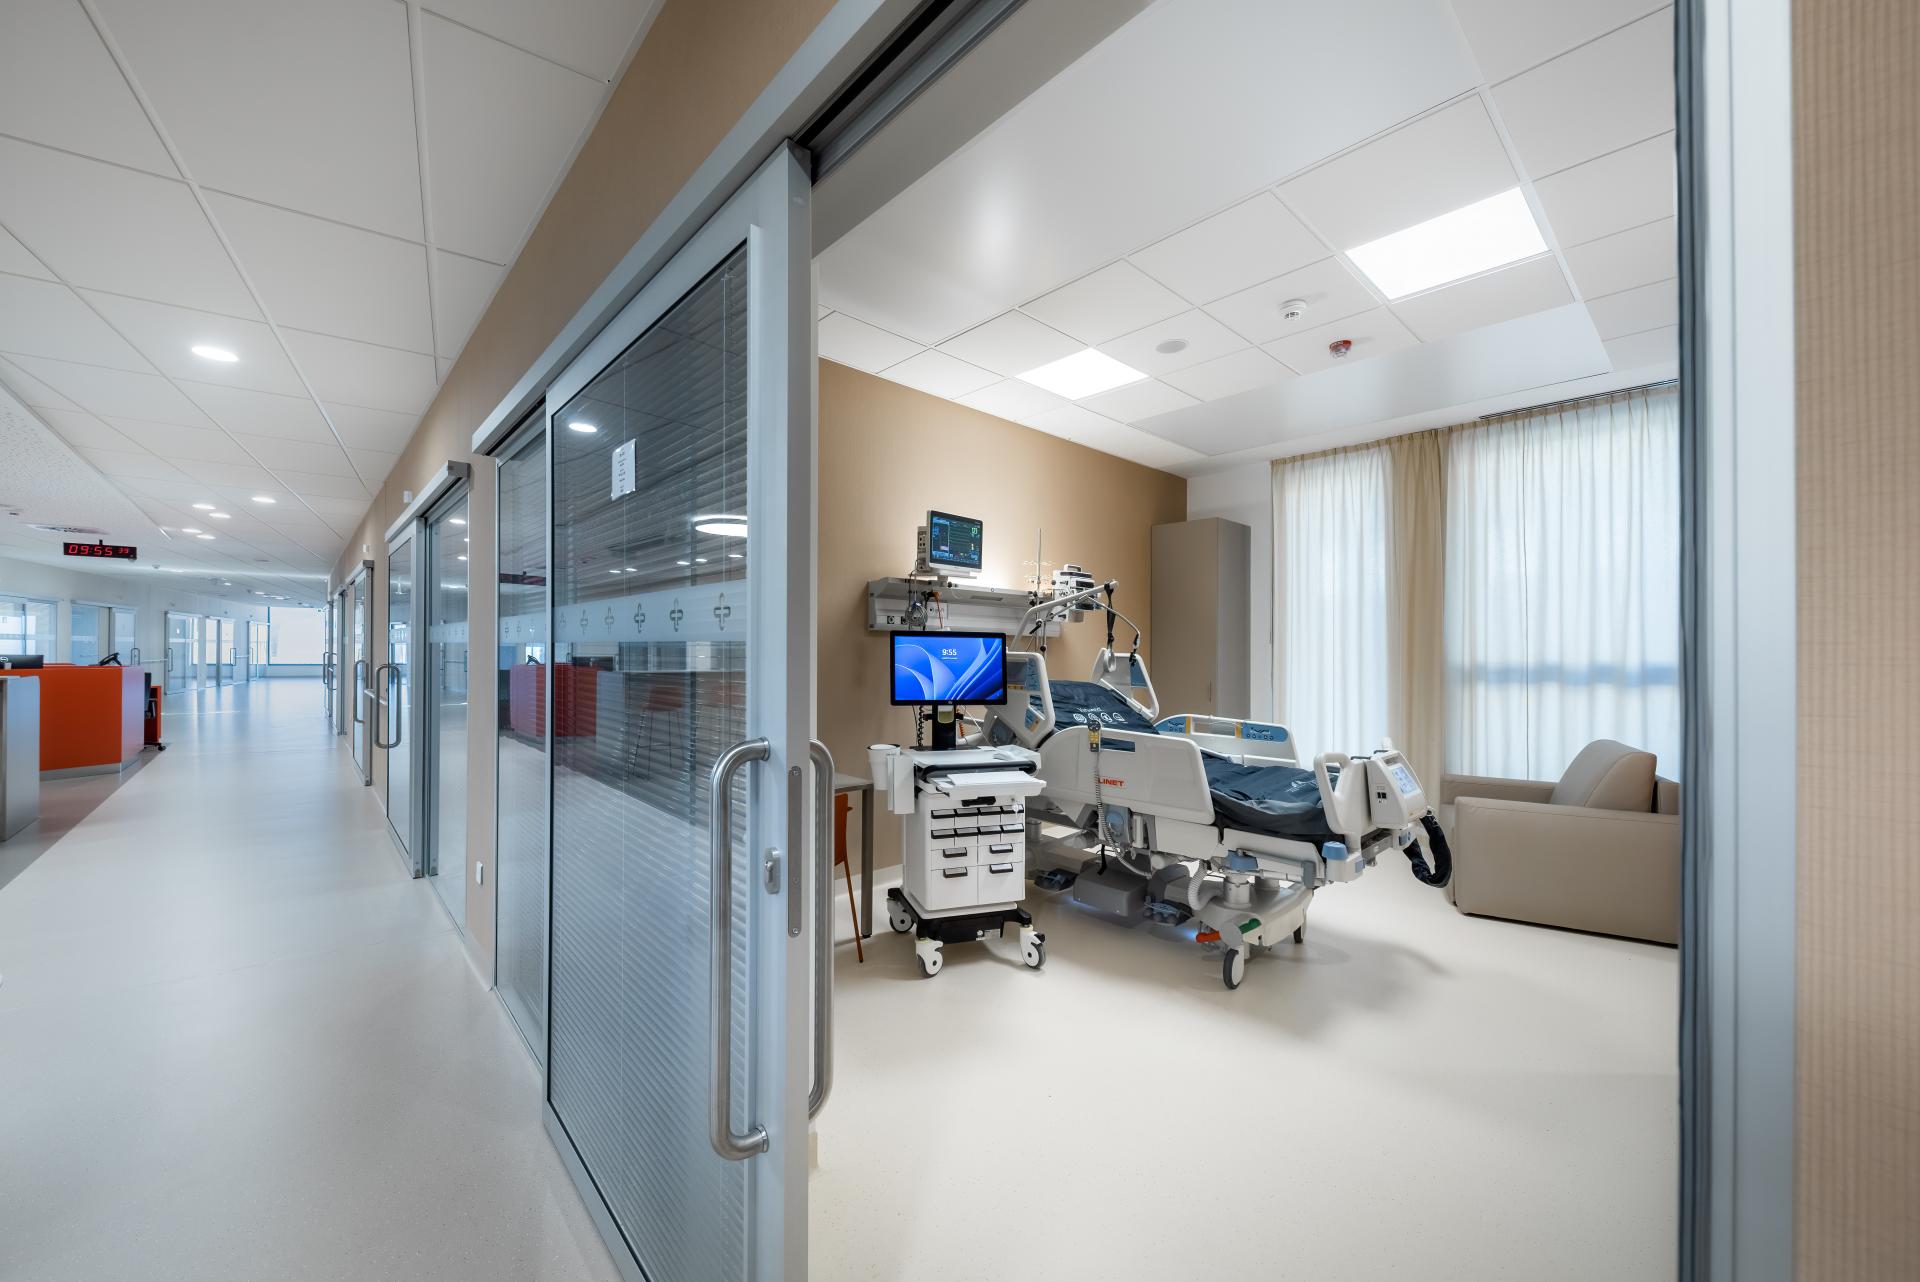 Otvorili nemocnicu Bory, ide o najväčšiu súkromnú investíciu do slovenského zdravotníctva (+ veľká galéria)